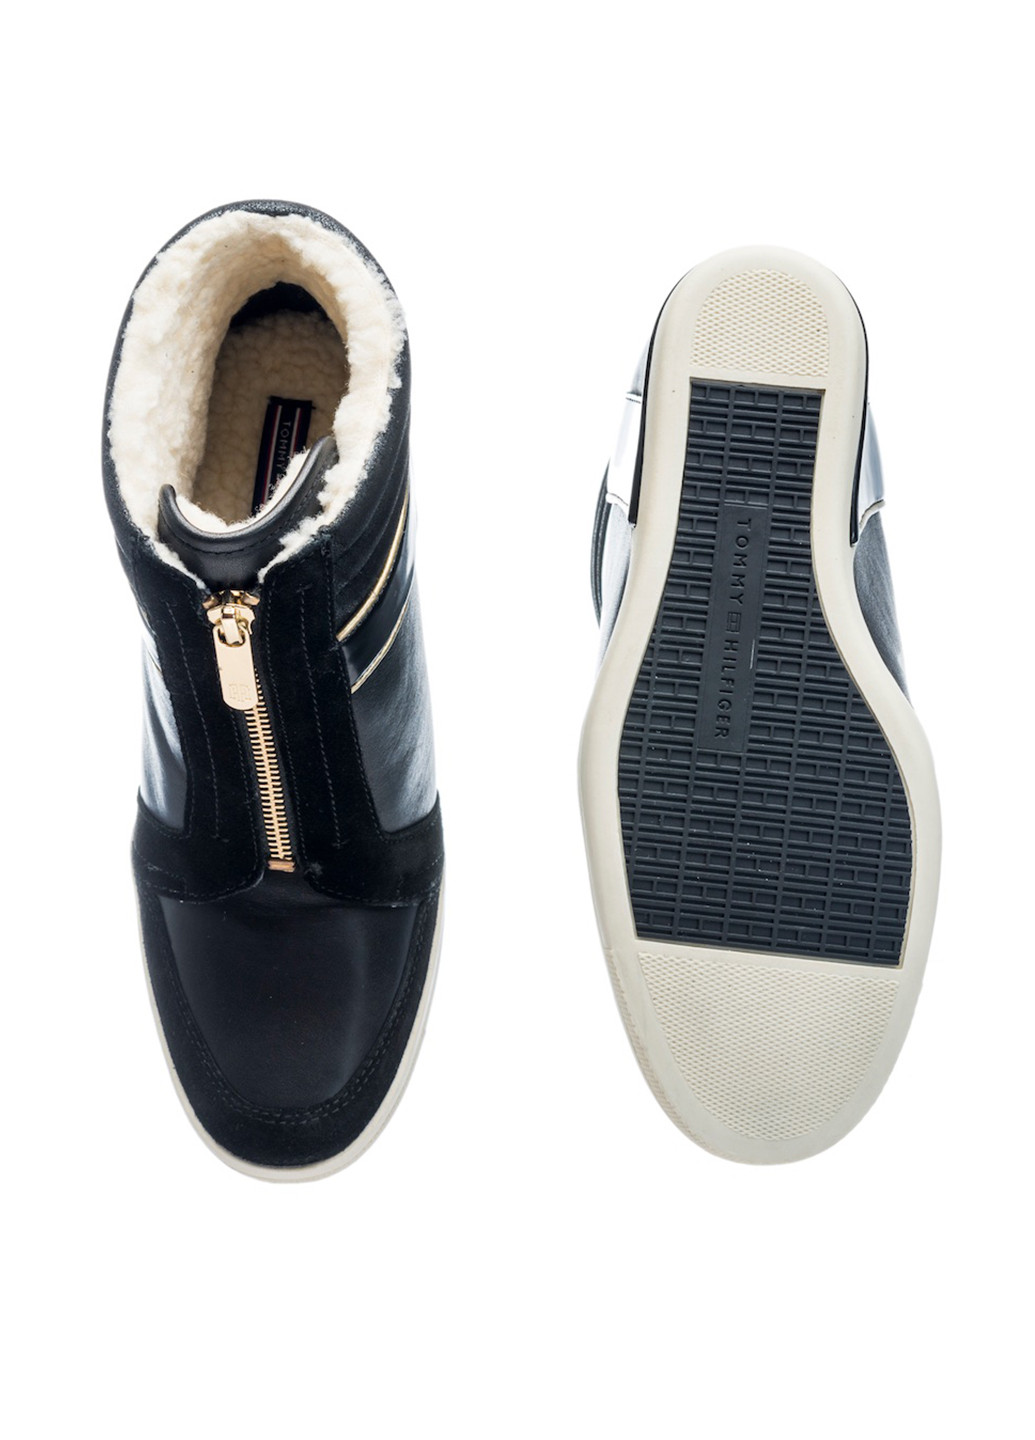 Зимние ботинки Tommy Hilfiger без декора из натуральной замши